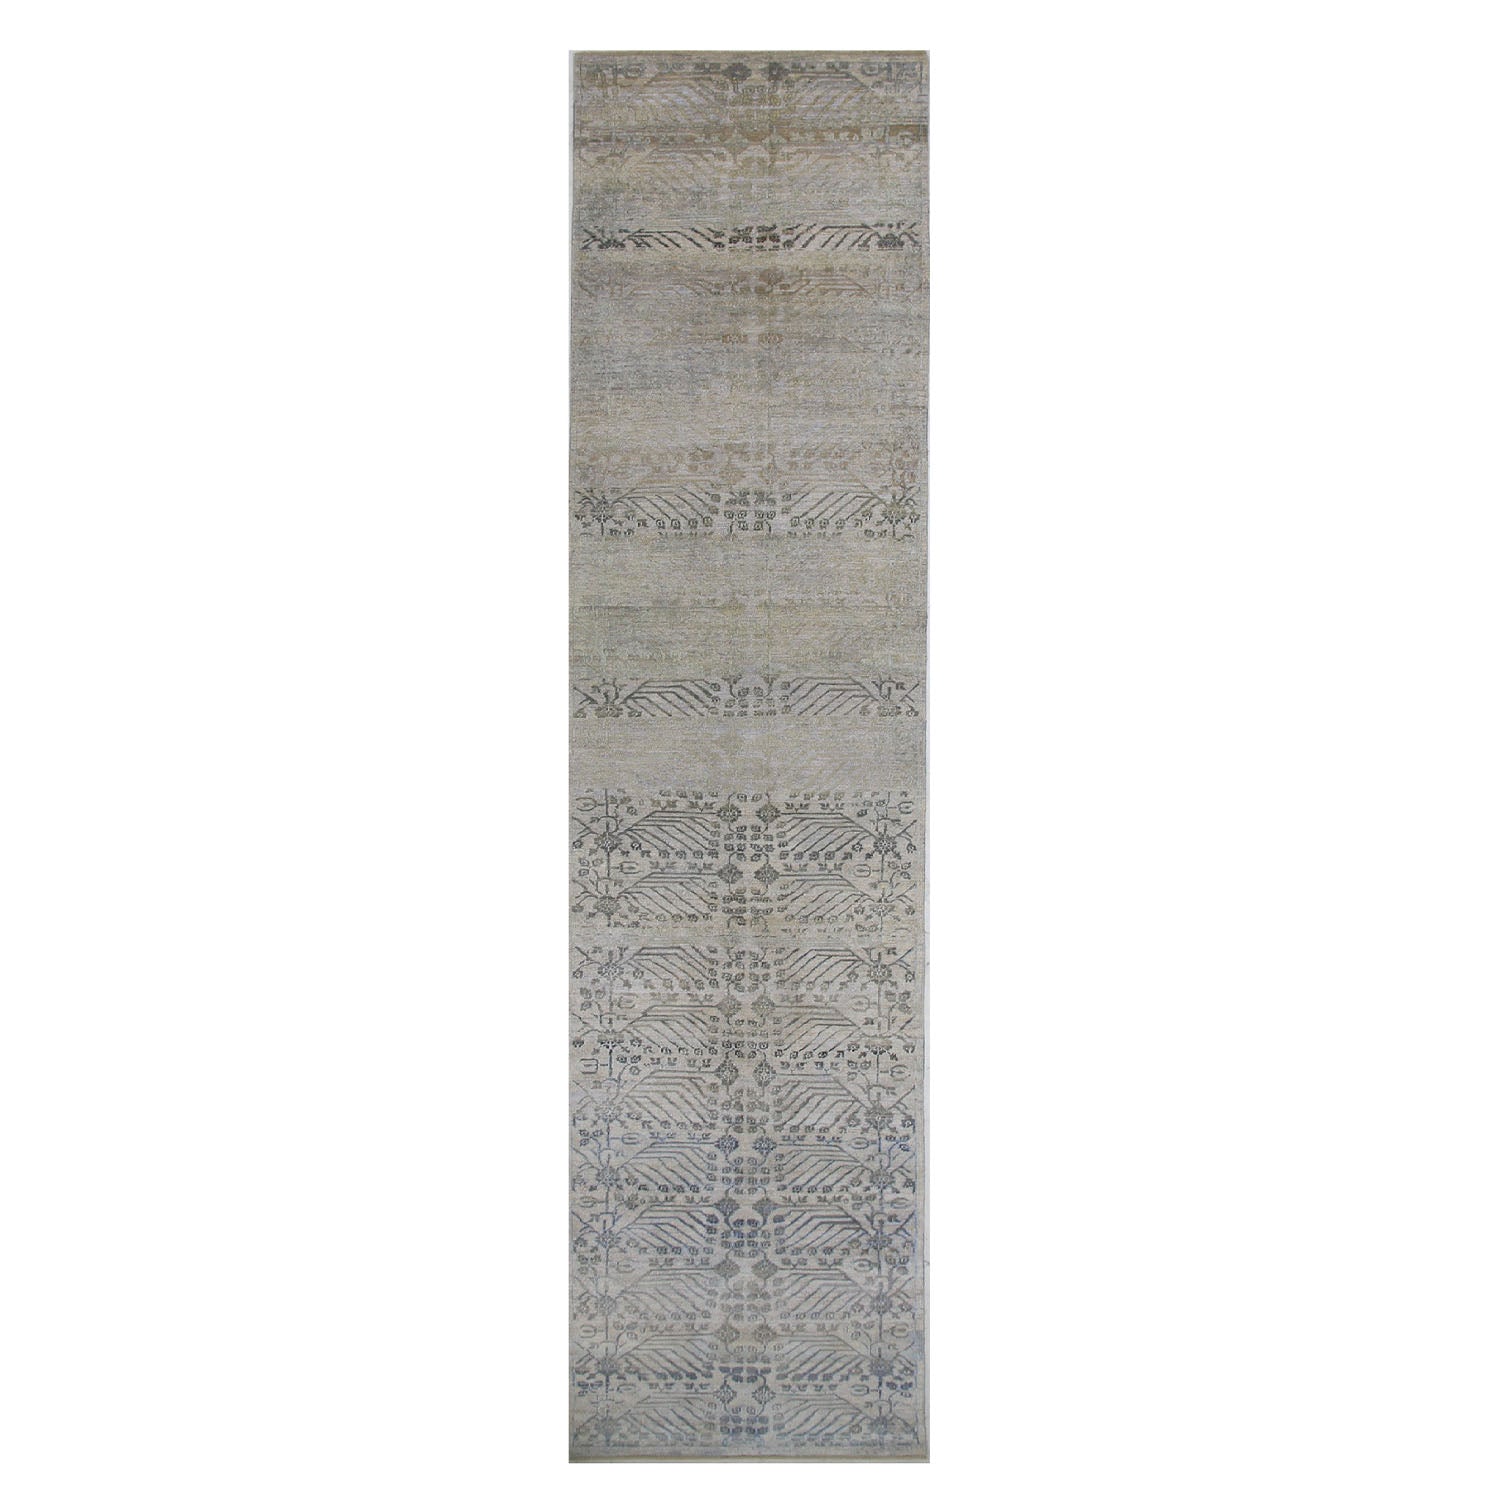 Grey Transitional Wool Silk Blend Runner - 3' x 19'7"